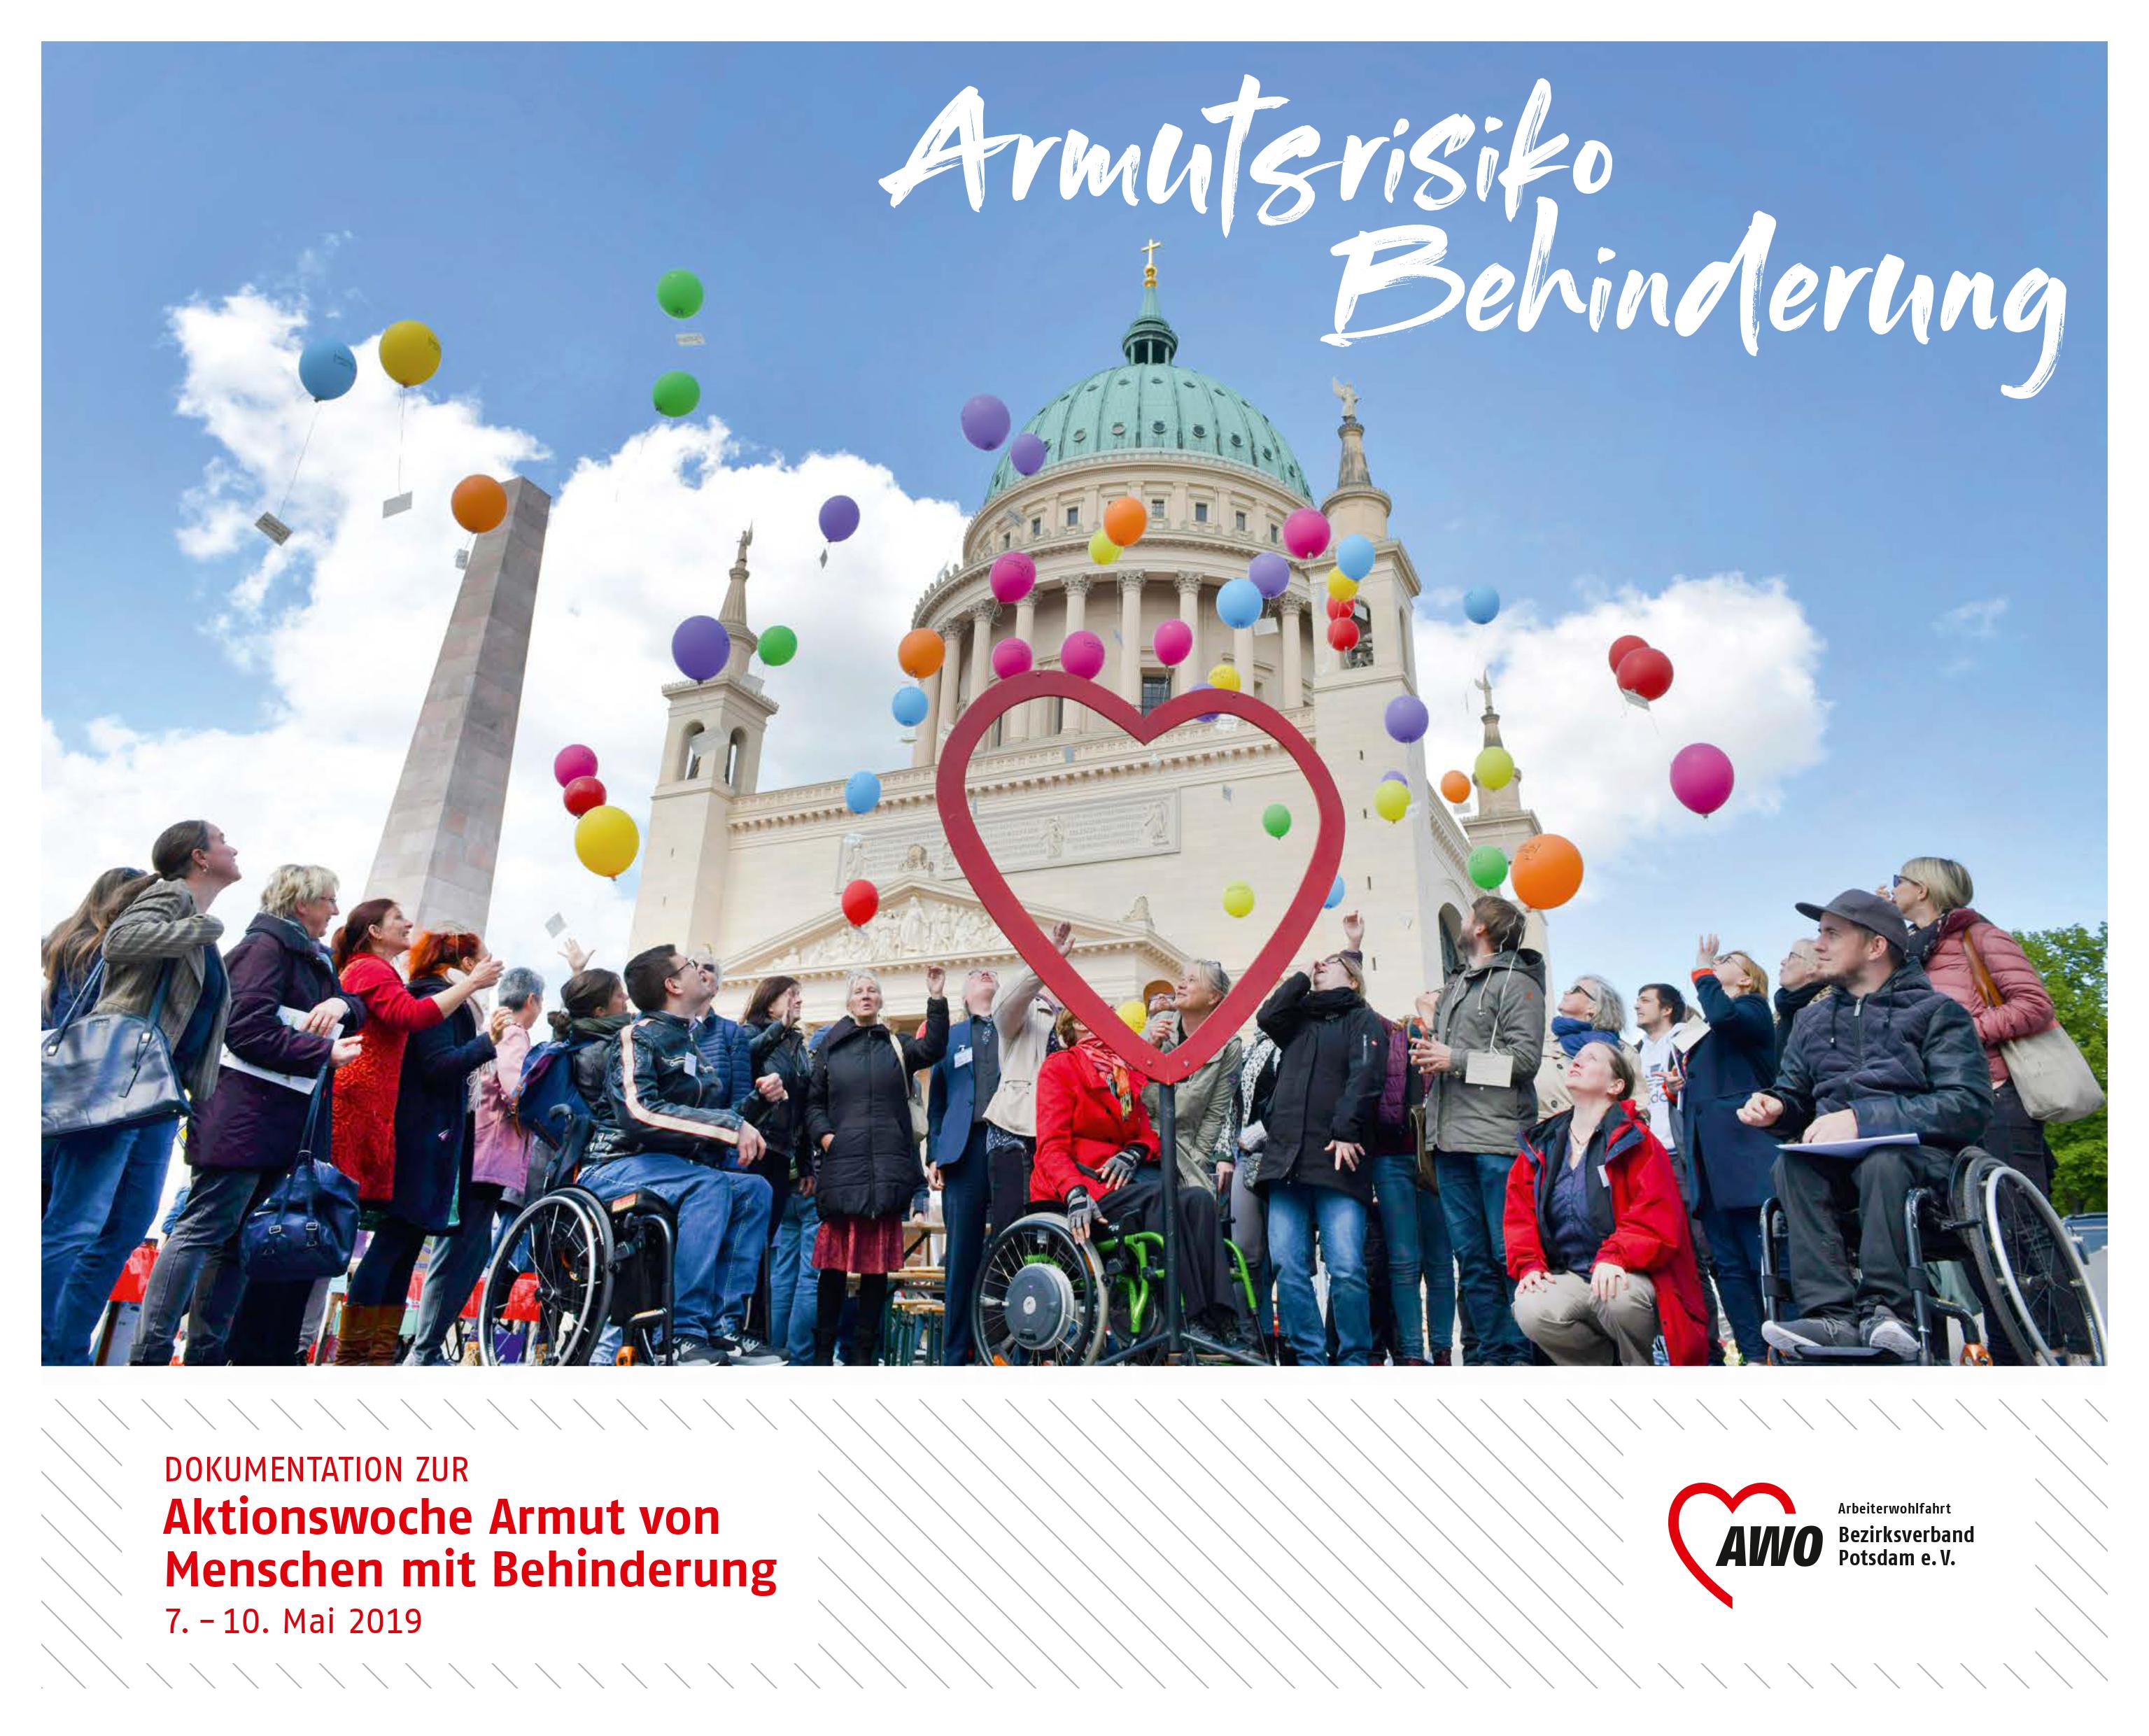 Dokumentation zur "Aktionswoche Armut von Menschen mit Behinderung" - Viele Menschen mit und ohne Behinderung vor der Nikolaikirche in Potsdam, lassen bunte Luftballons steigen.